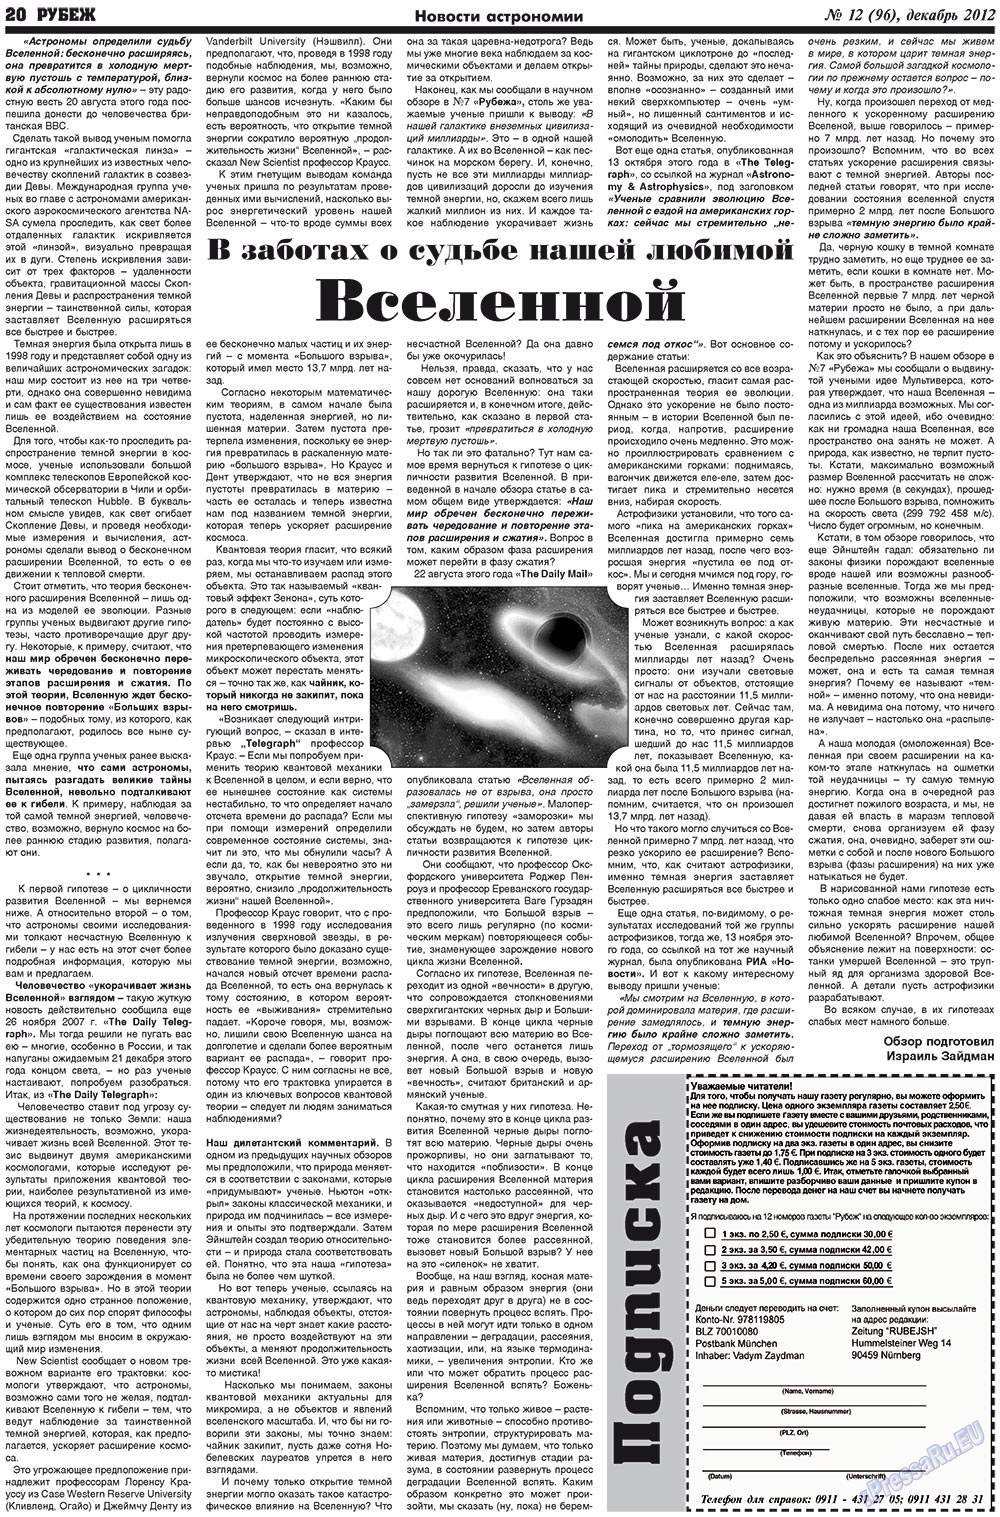 Рубеж (газета). 2012 год, номер 12, стр. 20